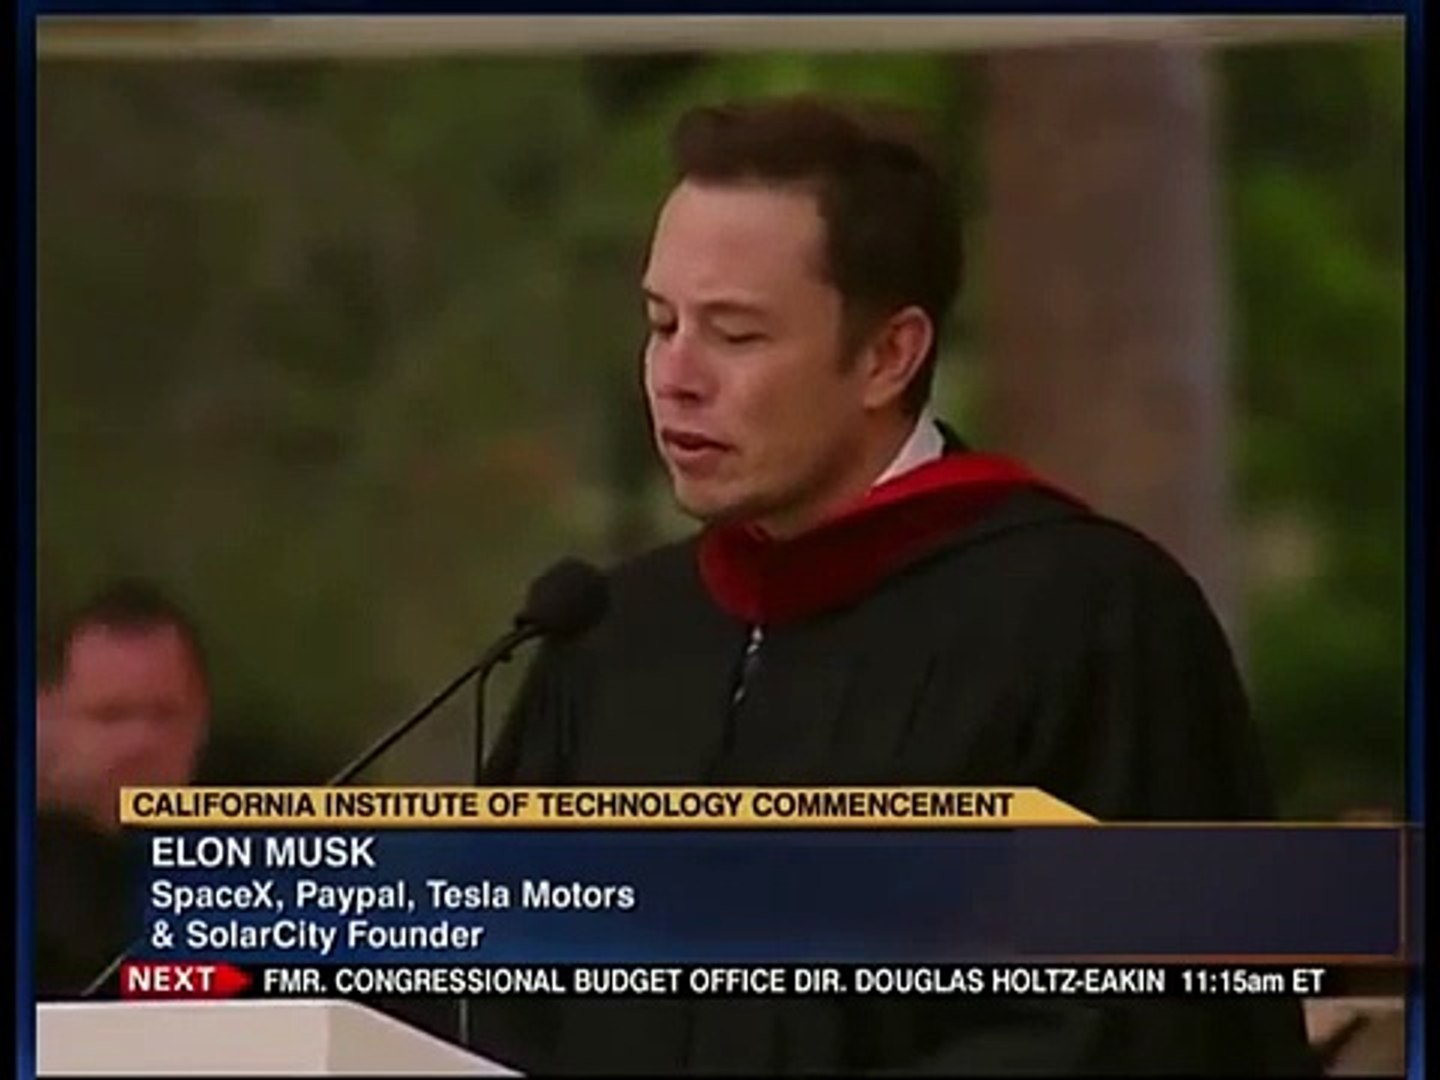 Elon Musk commencement speech at Caltech CIT